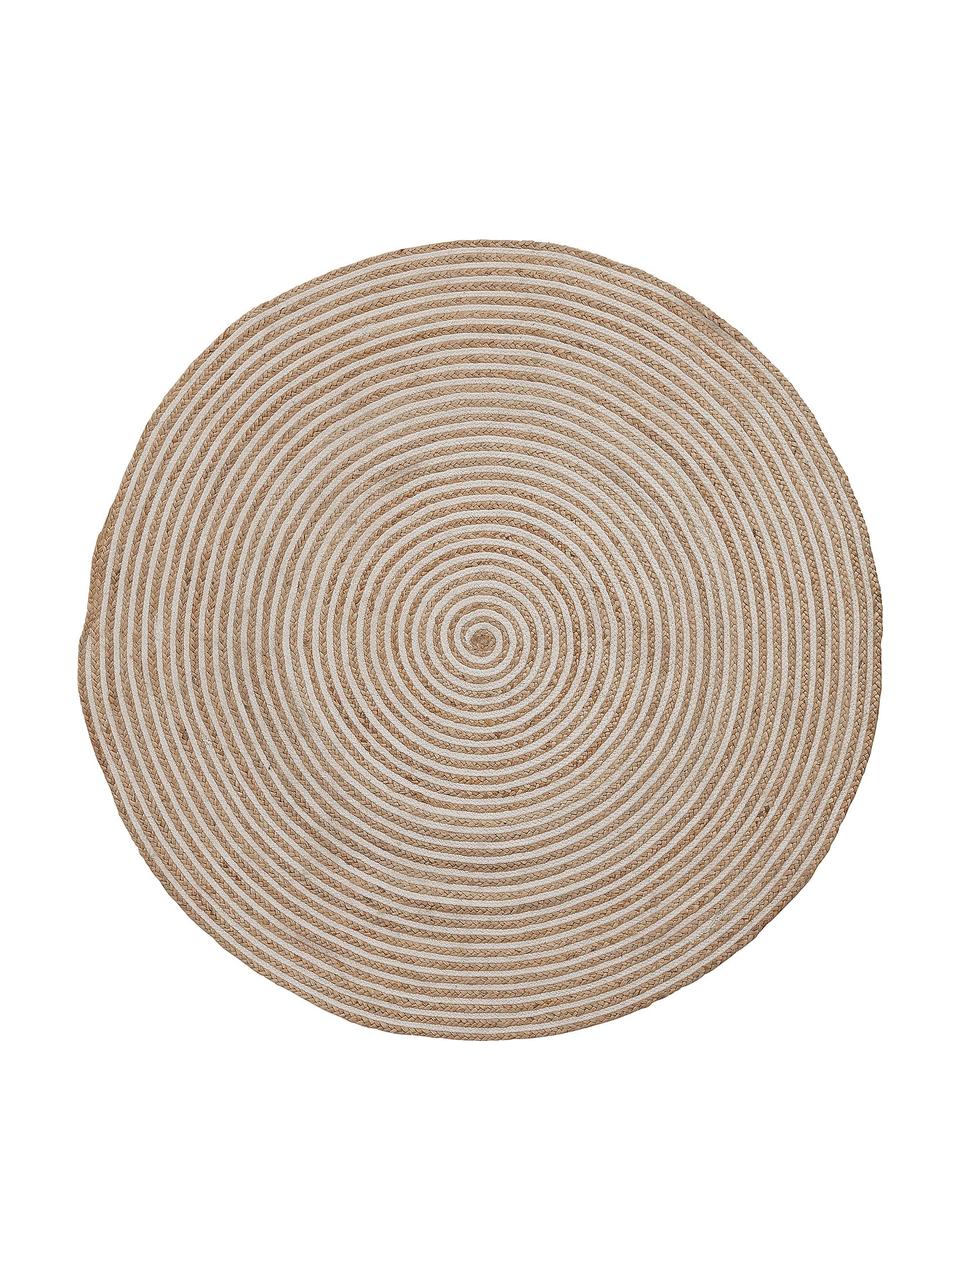 Runder Jute-Teppich Samy mit Spiralmuster, 60% Jute, 40% Baumwolle, Braun, Cremeweiß, Ø 100 cm (Größe XS)